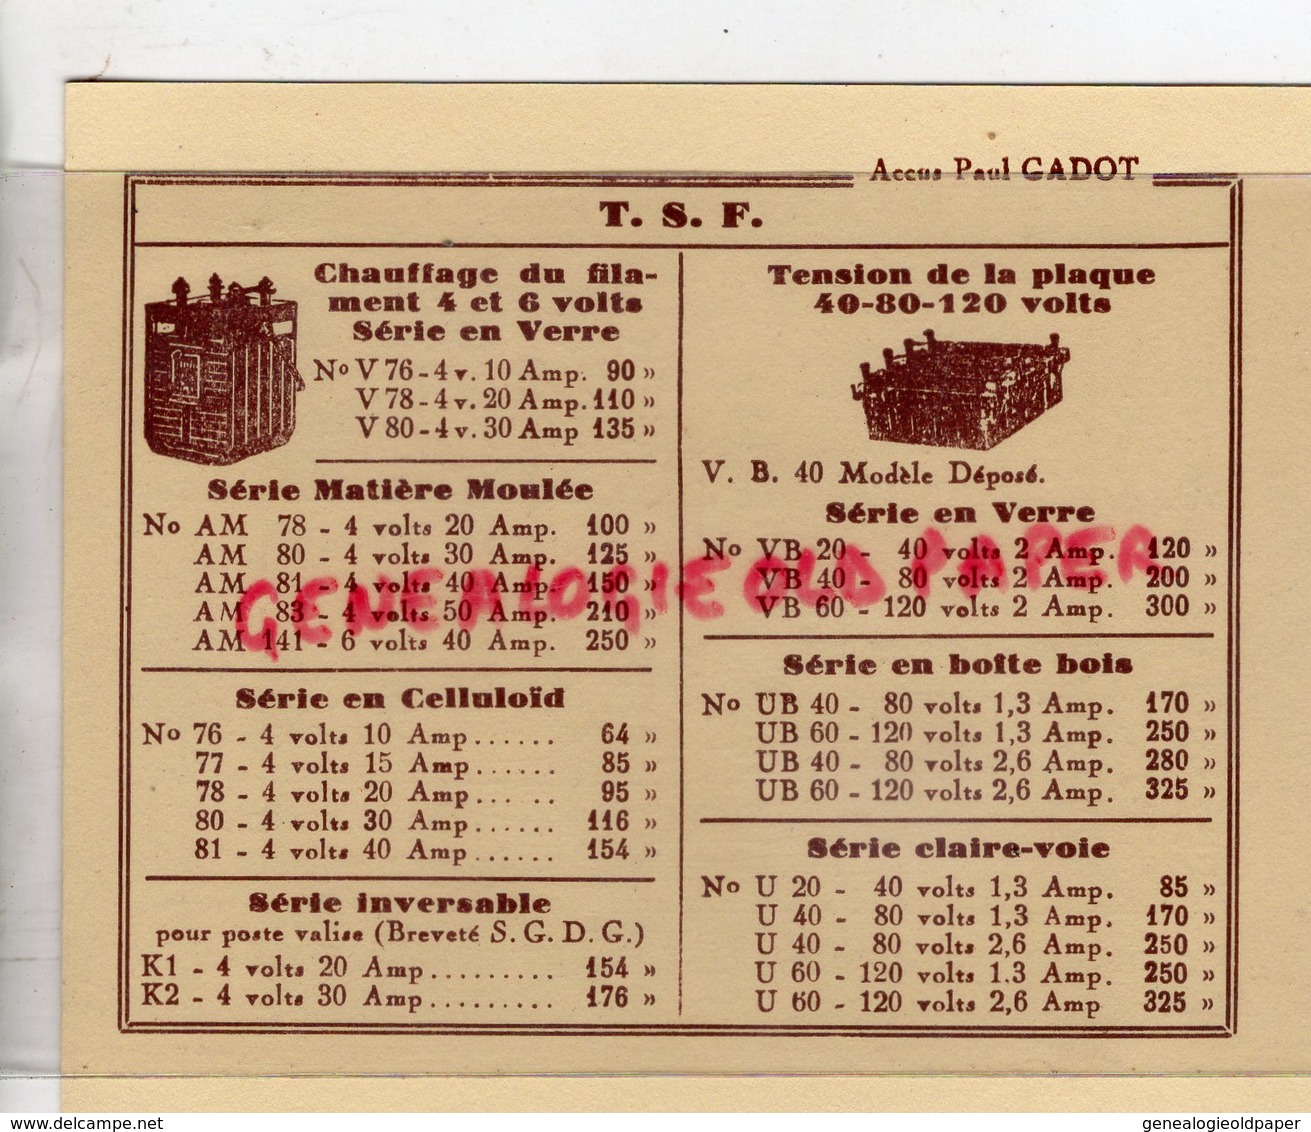 75- PARIS- ACCULULATEUR -LES ACCUS PAUL GADOT-S.A.P.A. 60 BOULEVARD DE LA SOMME-BATTERIE - RADIO TSF - 1932 - Automovilismo